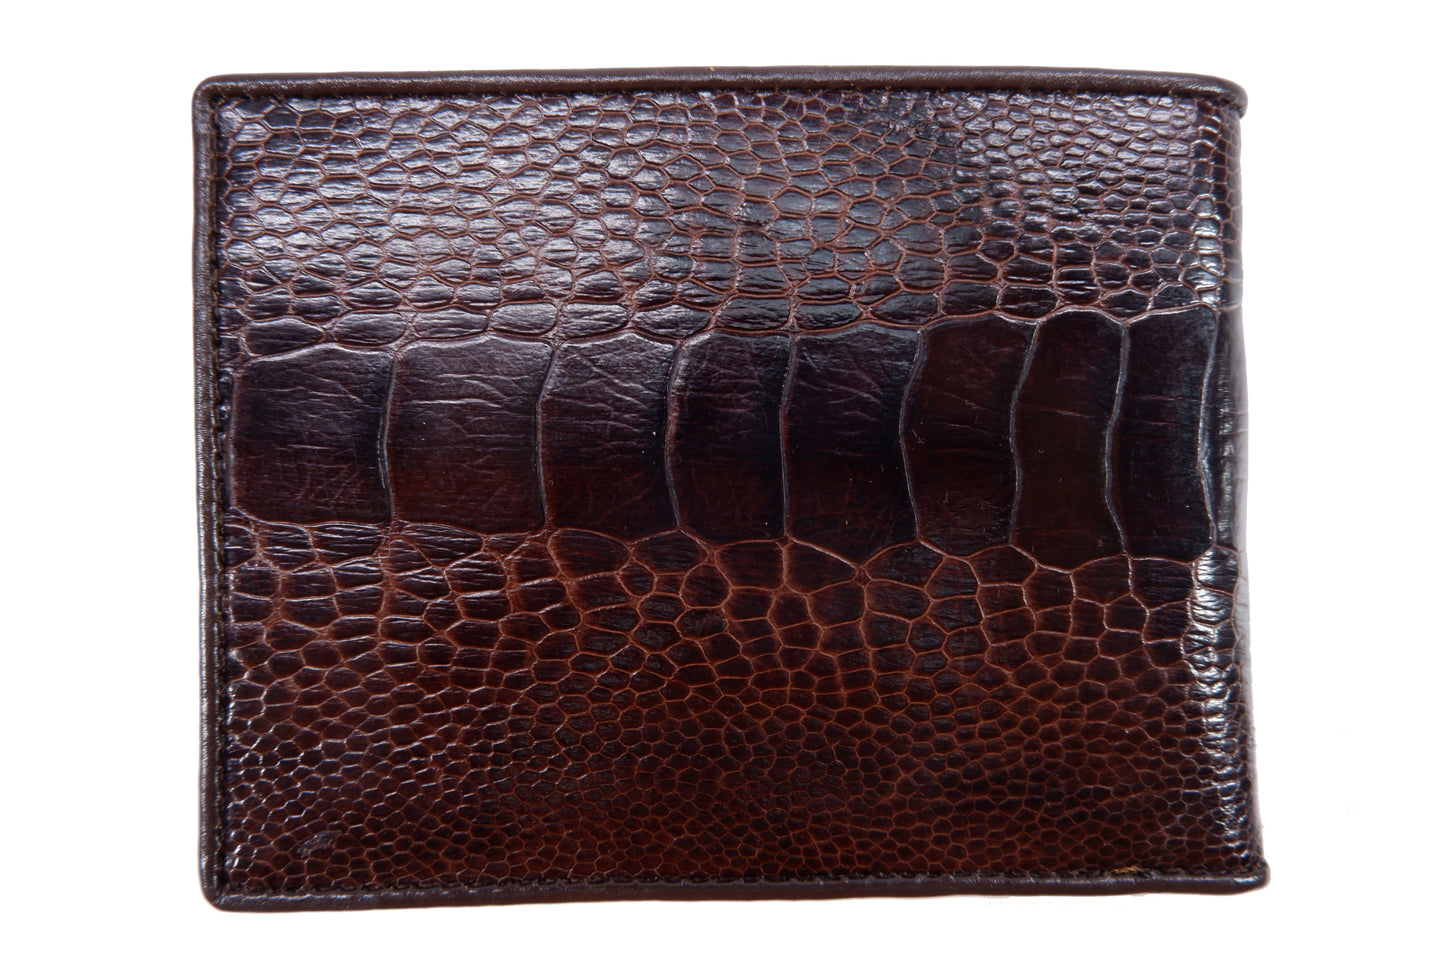 Genuine Ostrich Leg Skin Leather Soft Bifold Wallet